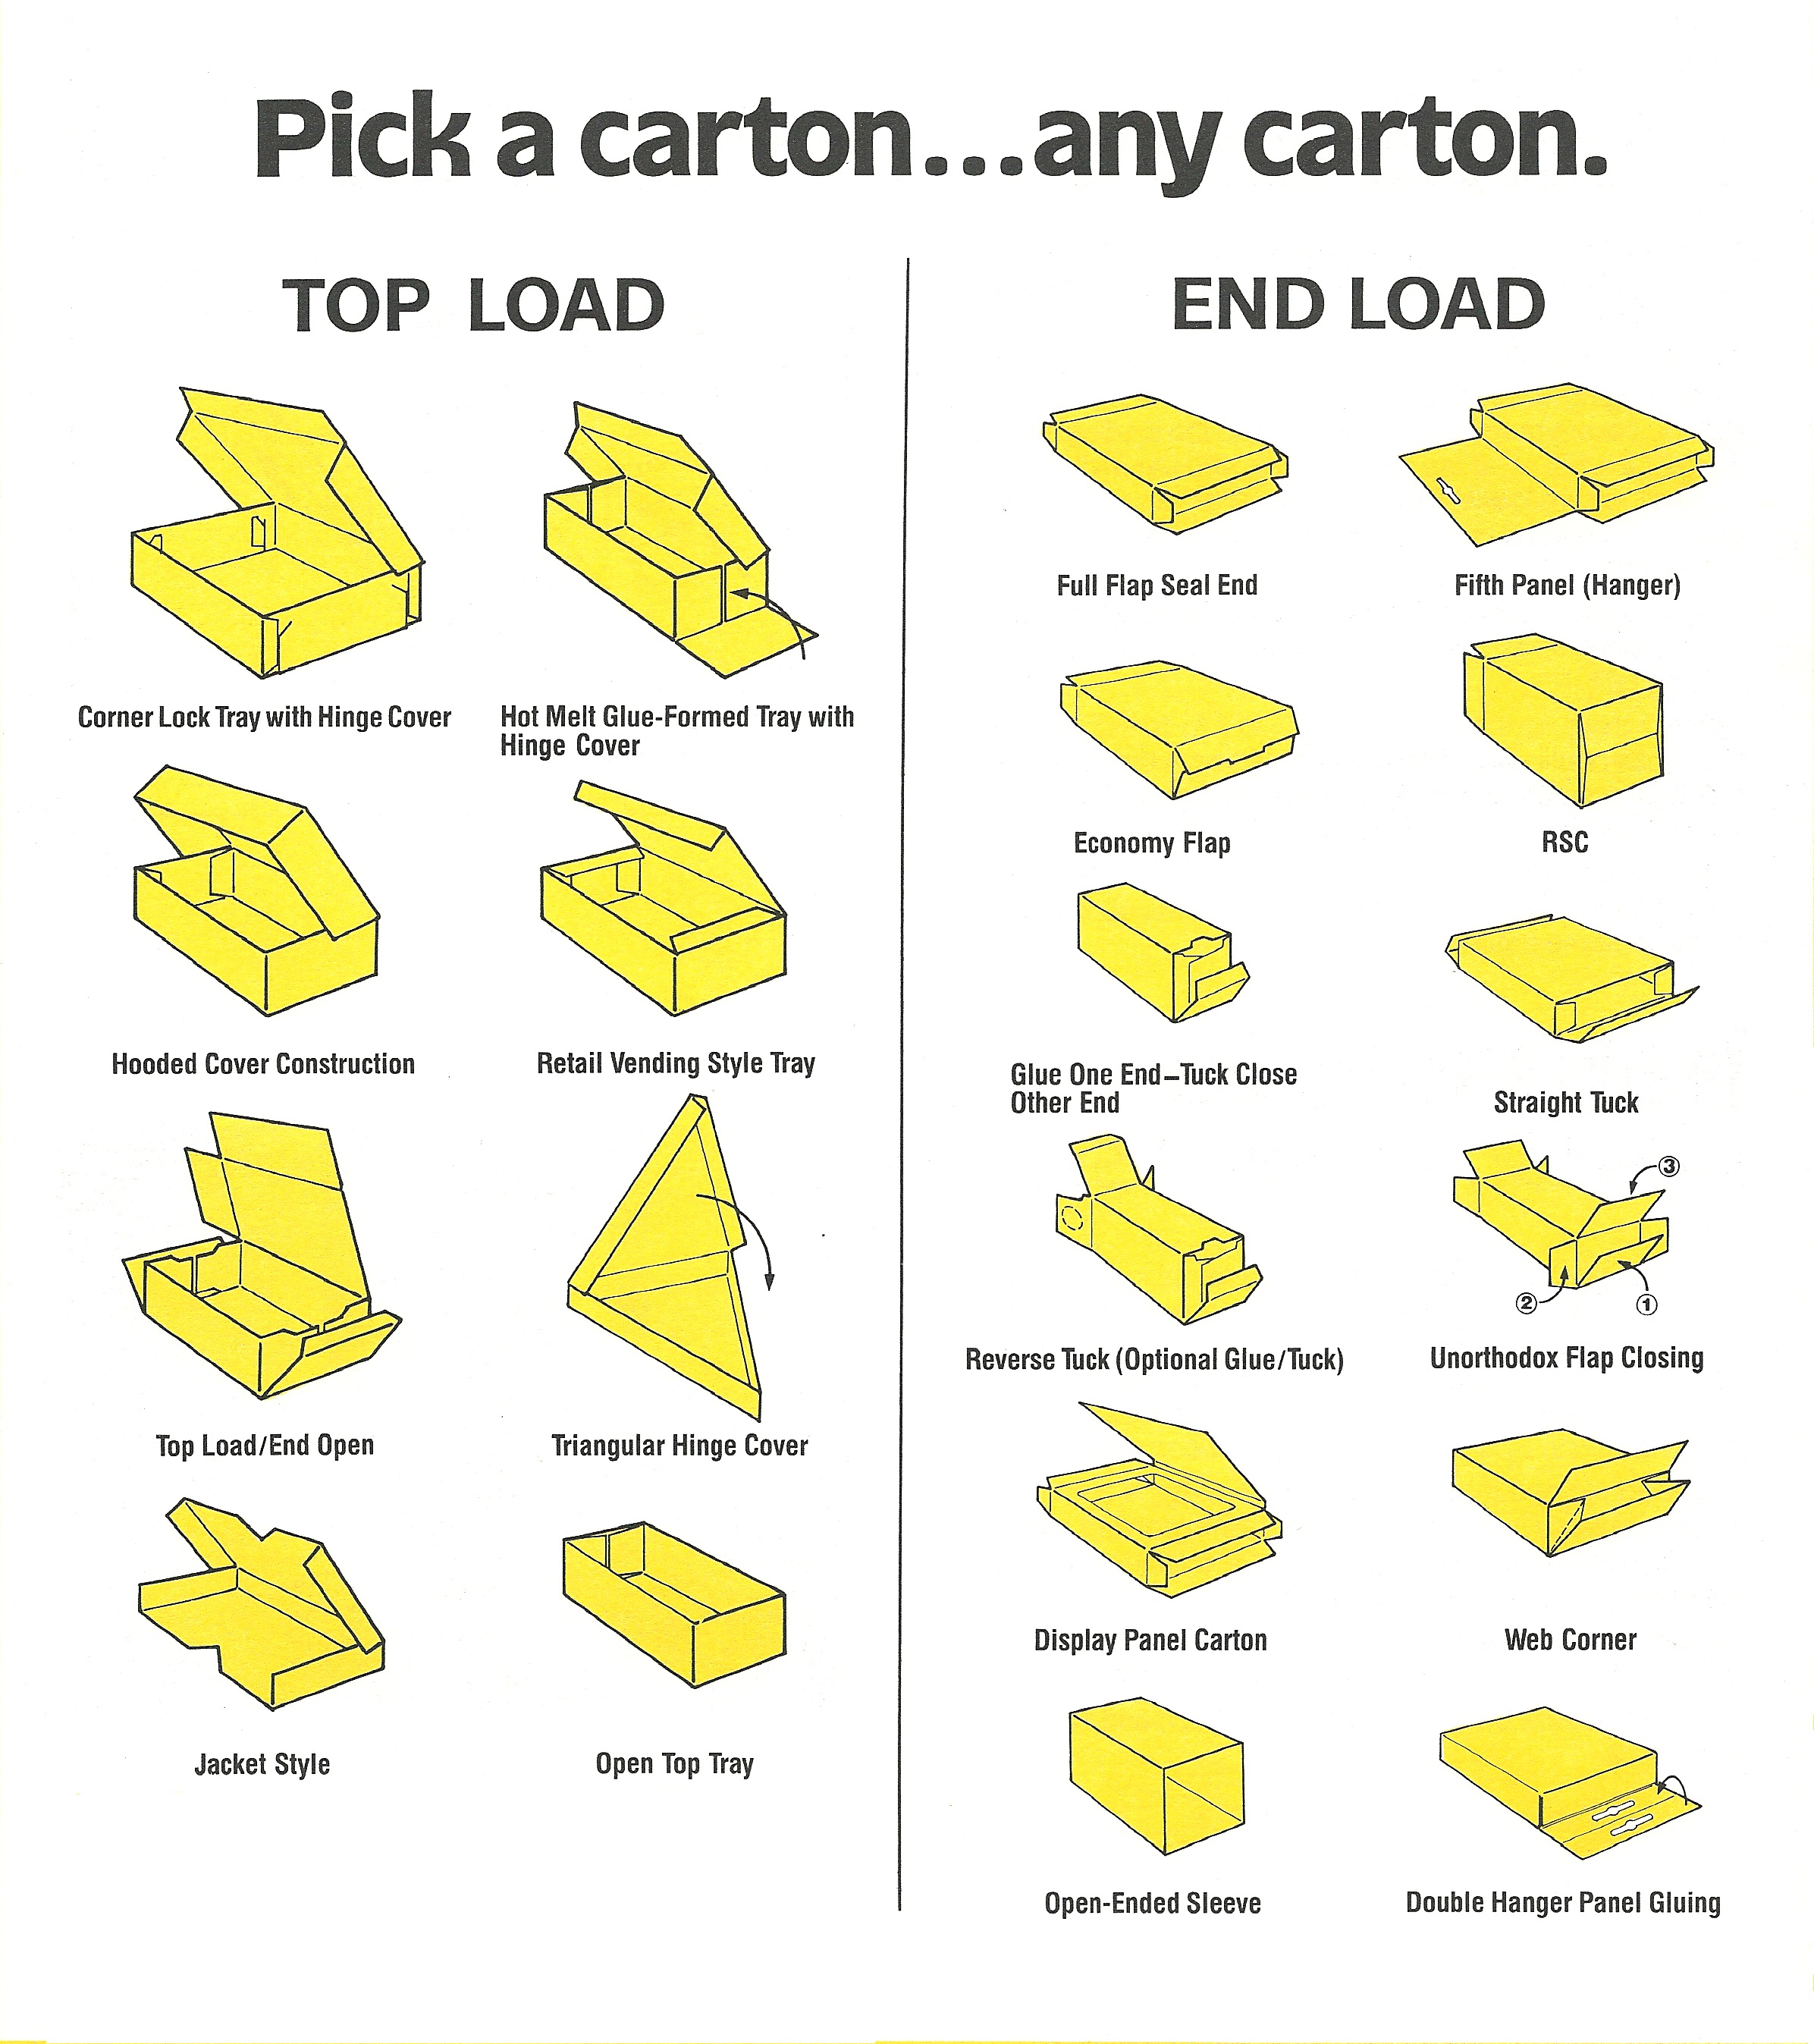 pick a carton (image)